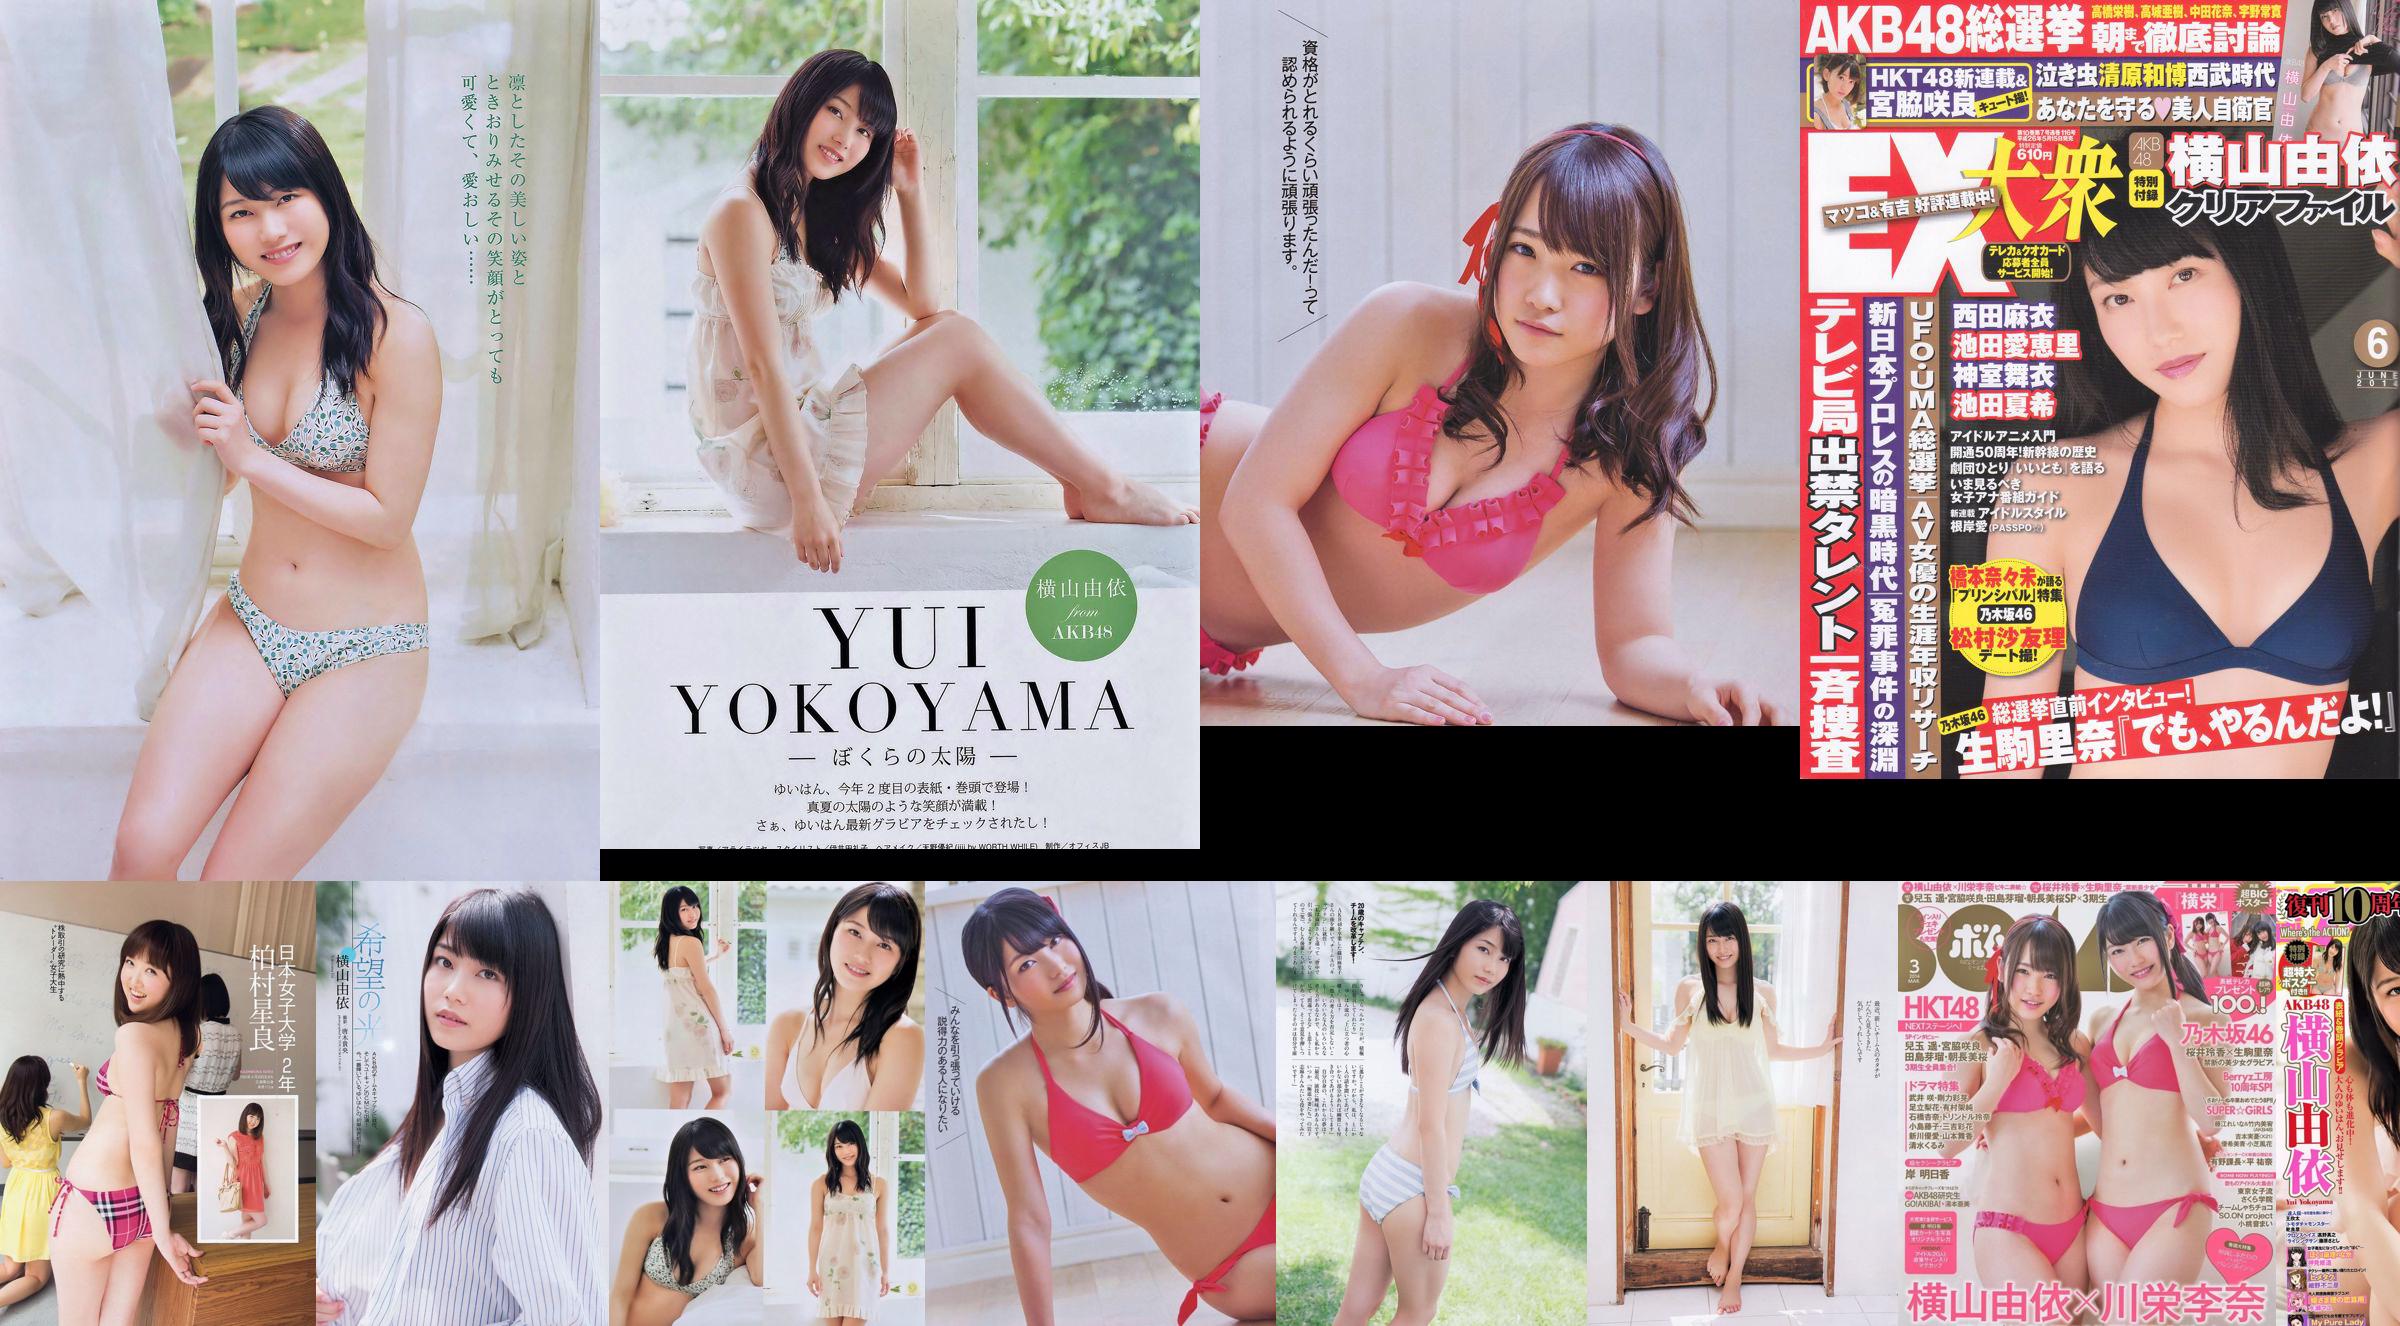 [EX Taishu] Yokoyama Yui, Miyawaki Sakura, Matsumura Sa Yuri 2014 Majalah Foto No. 06 No.0796a2 Halaman 1